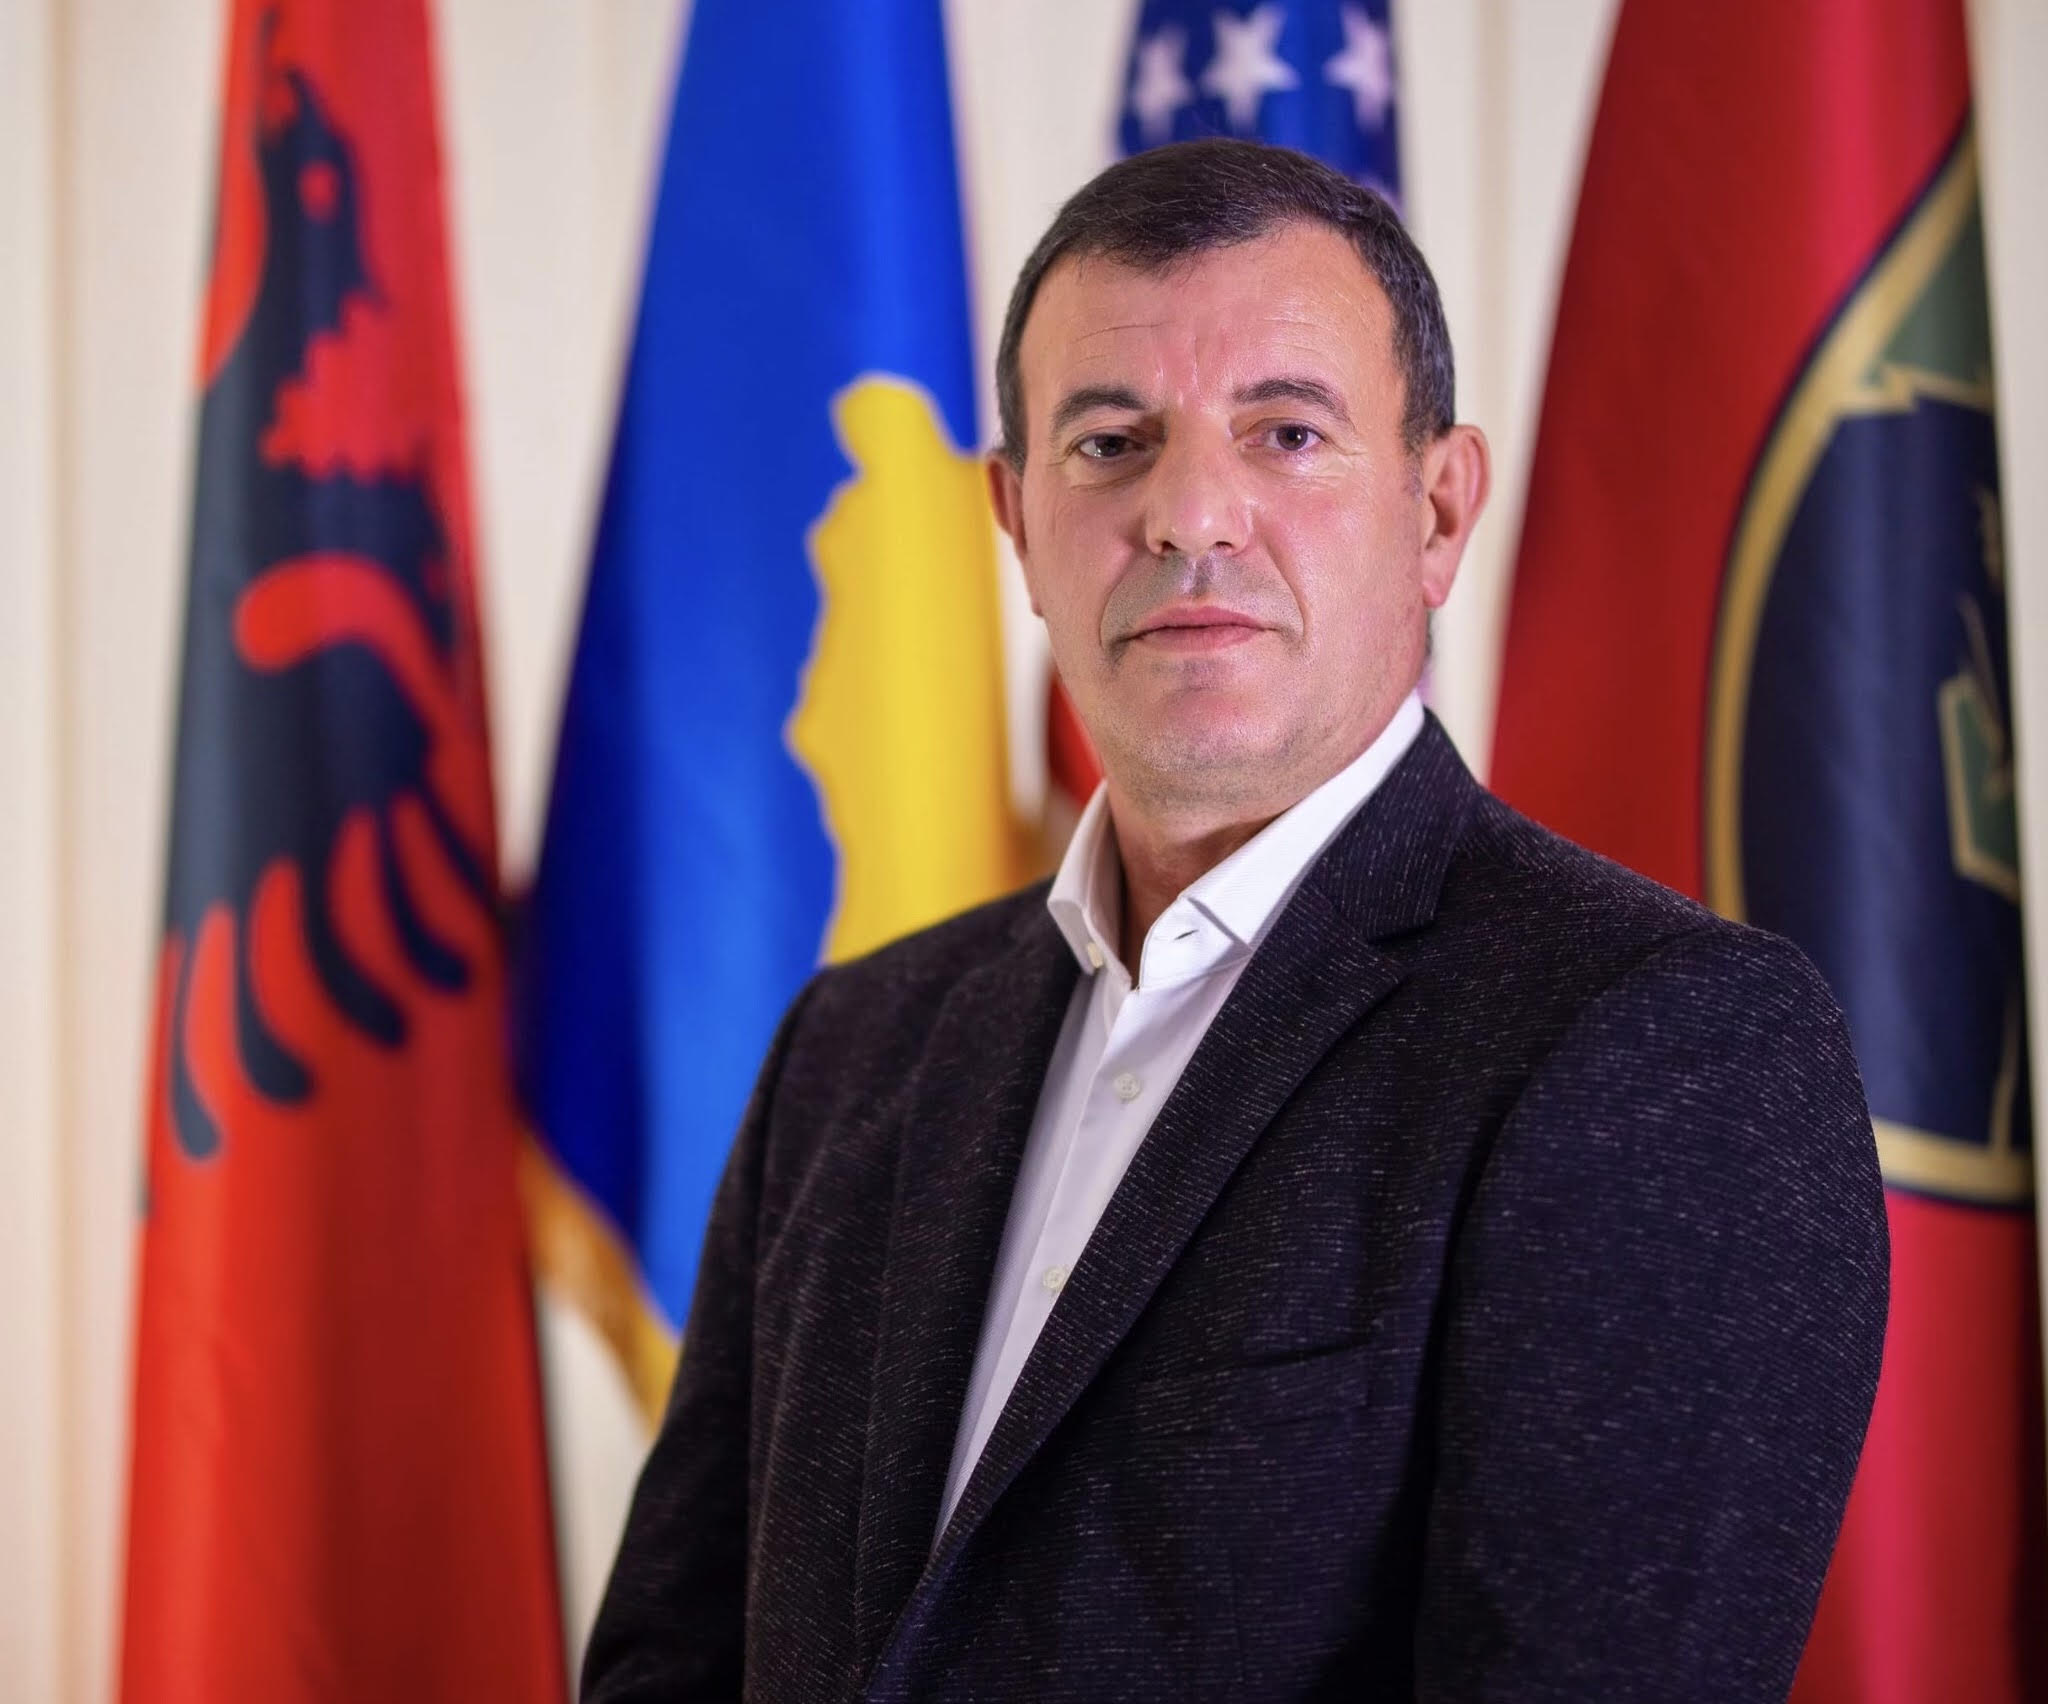 Kryetari i Obiliqit reagon ndaj deklarates të kryeshefit të KEK-ut për ndërtimin e parkut solar, pa konsultim me komunën